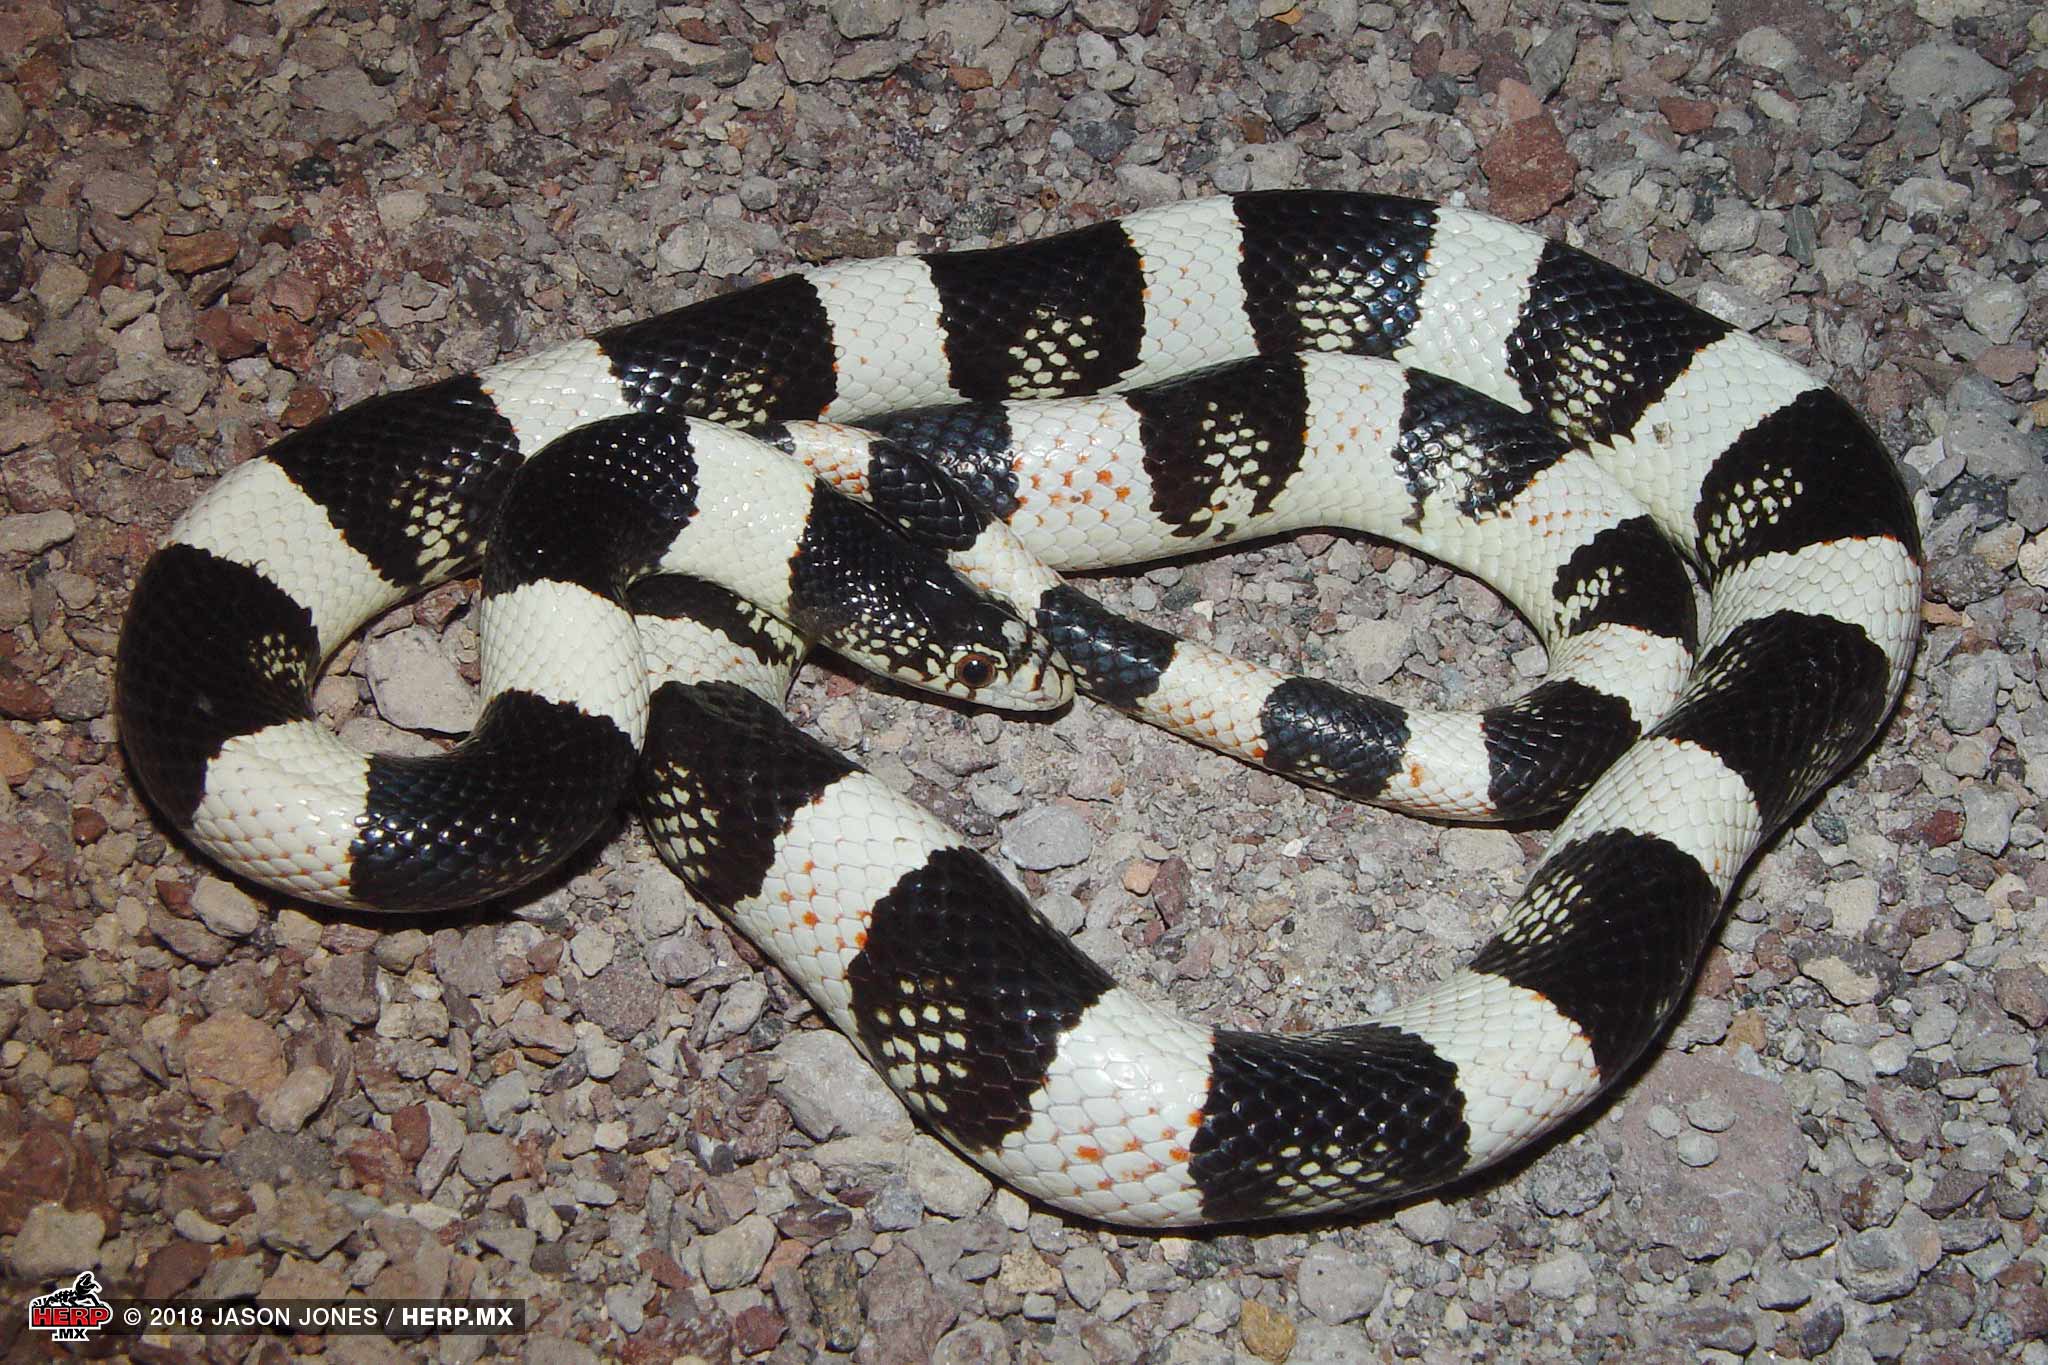 A Western Longnose Snake (<i>Rhinocheilus antoni</i>) from coastal Nayarit